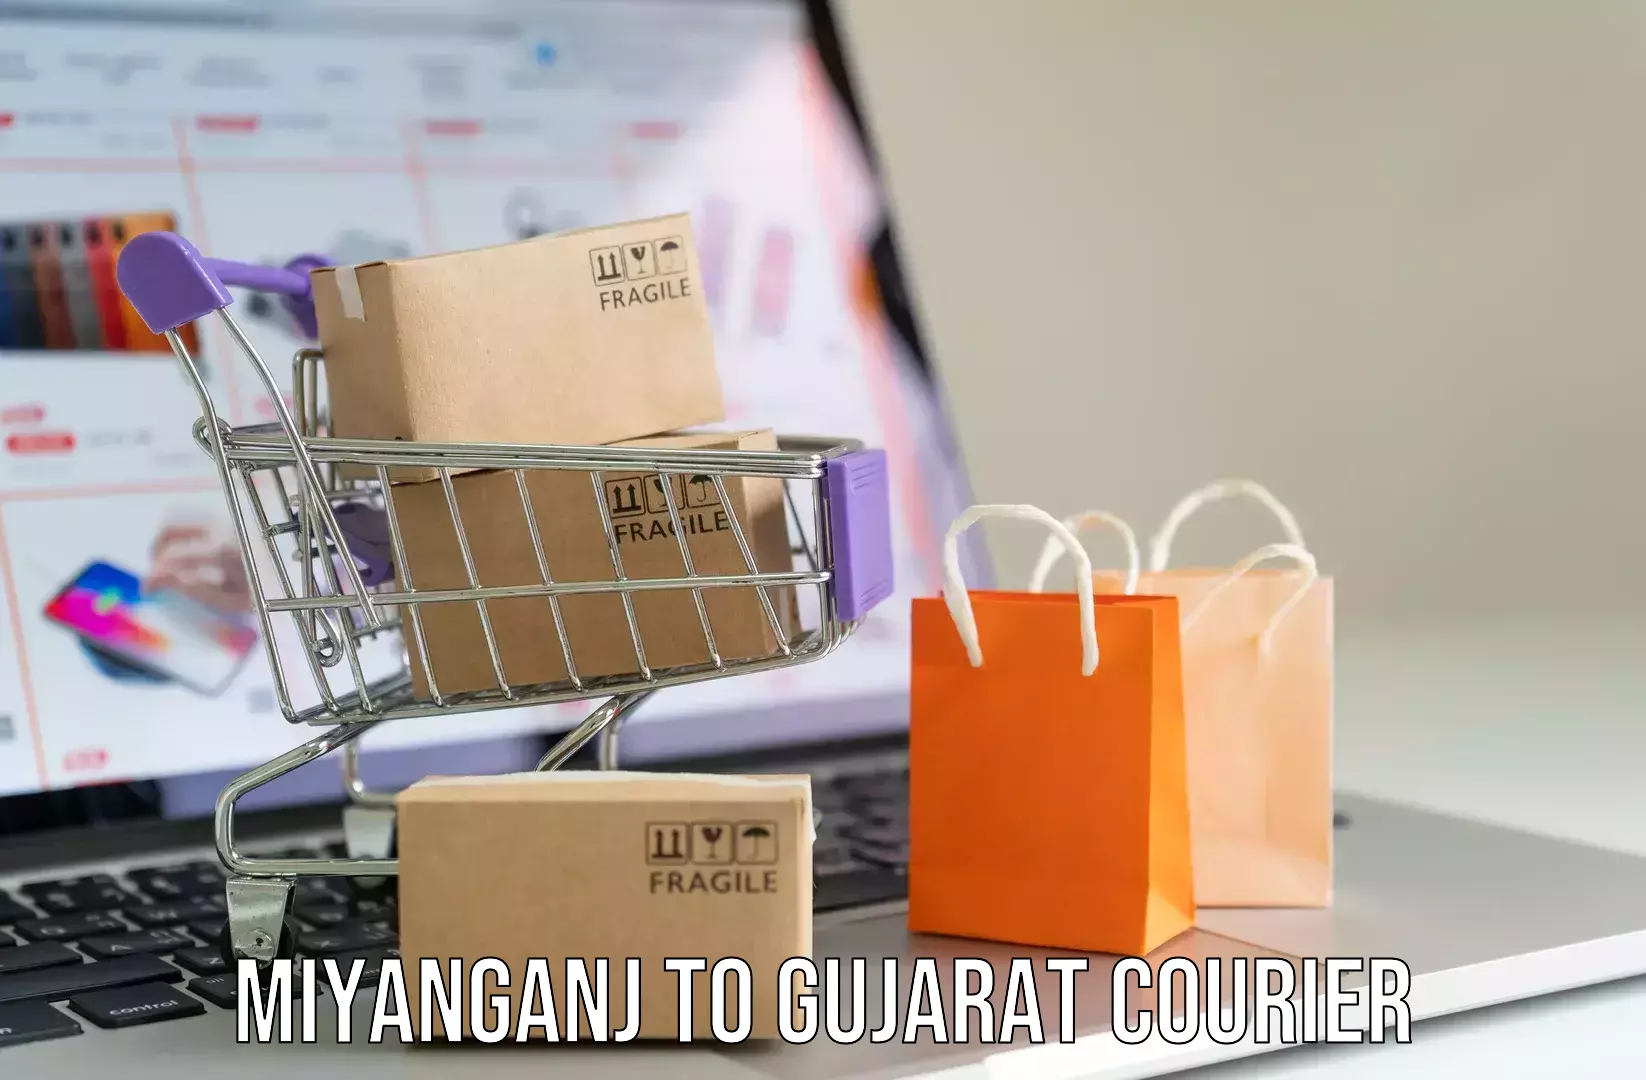 Luggage transport rates Miyanganj to Gujarat